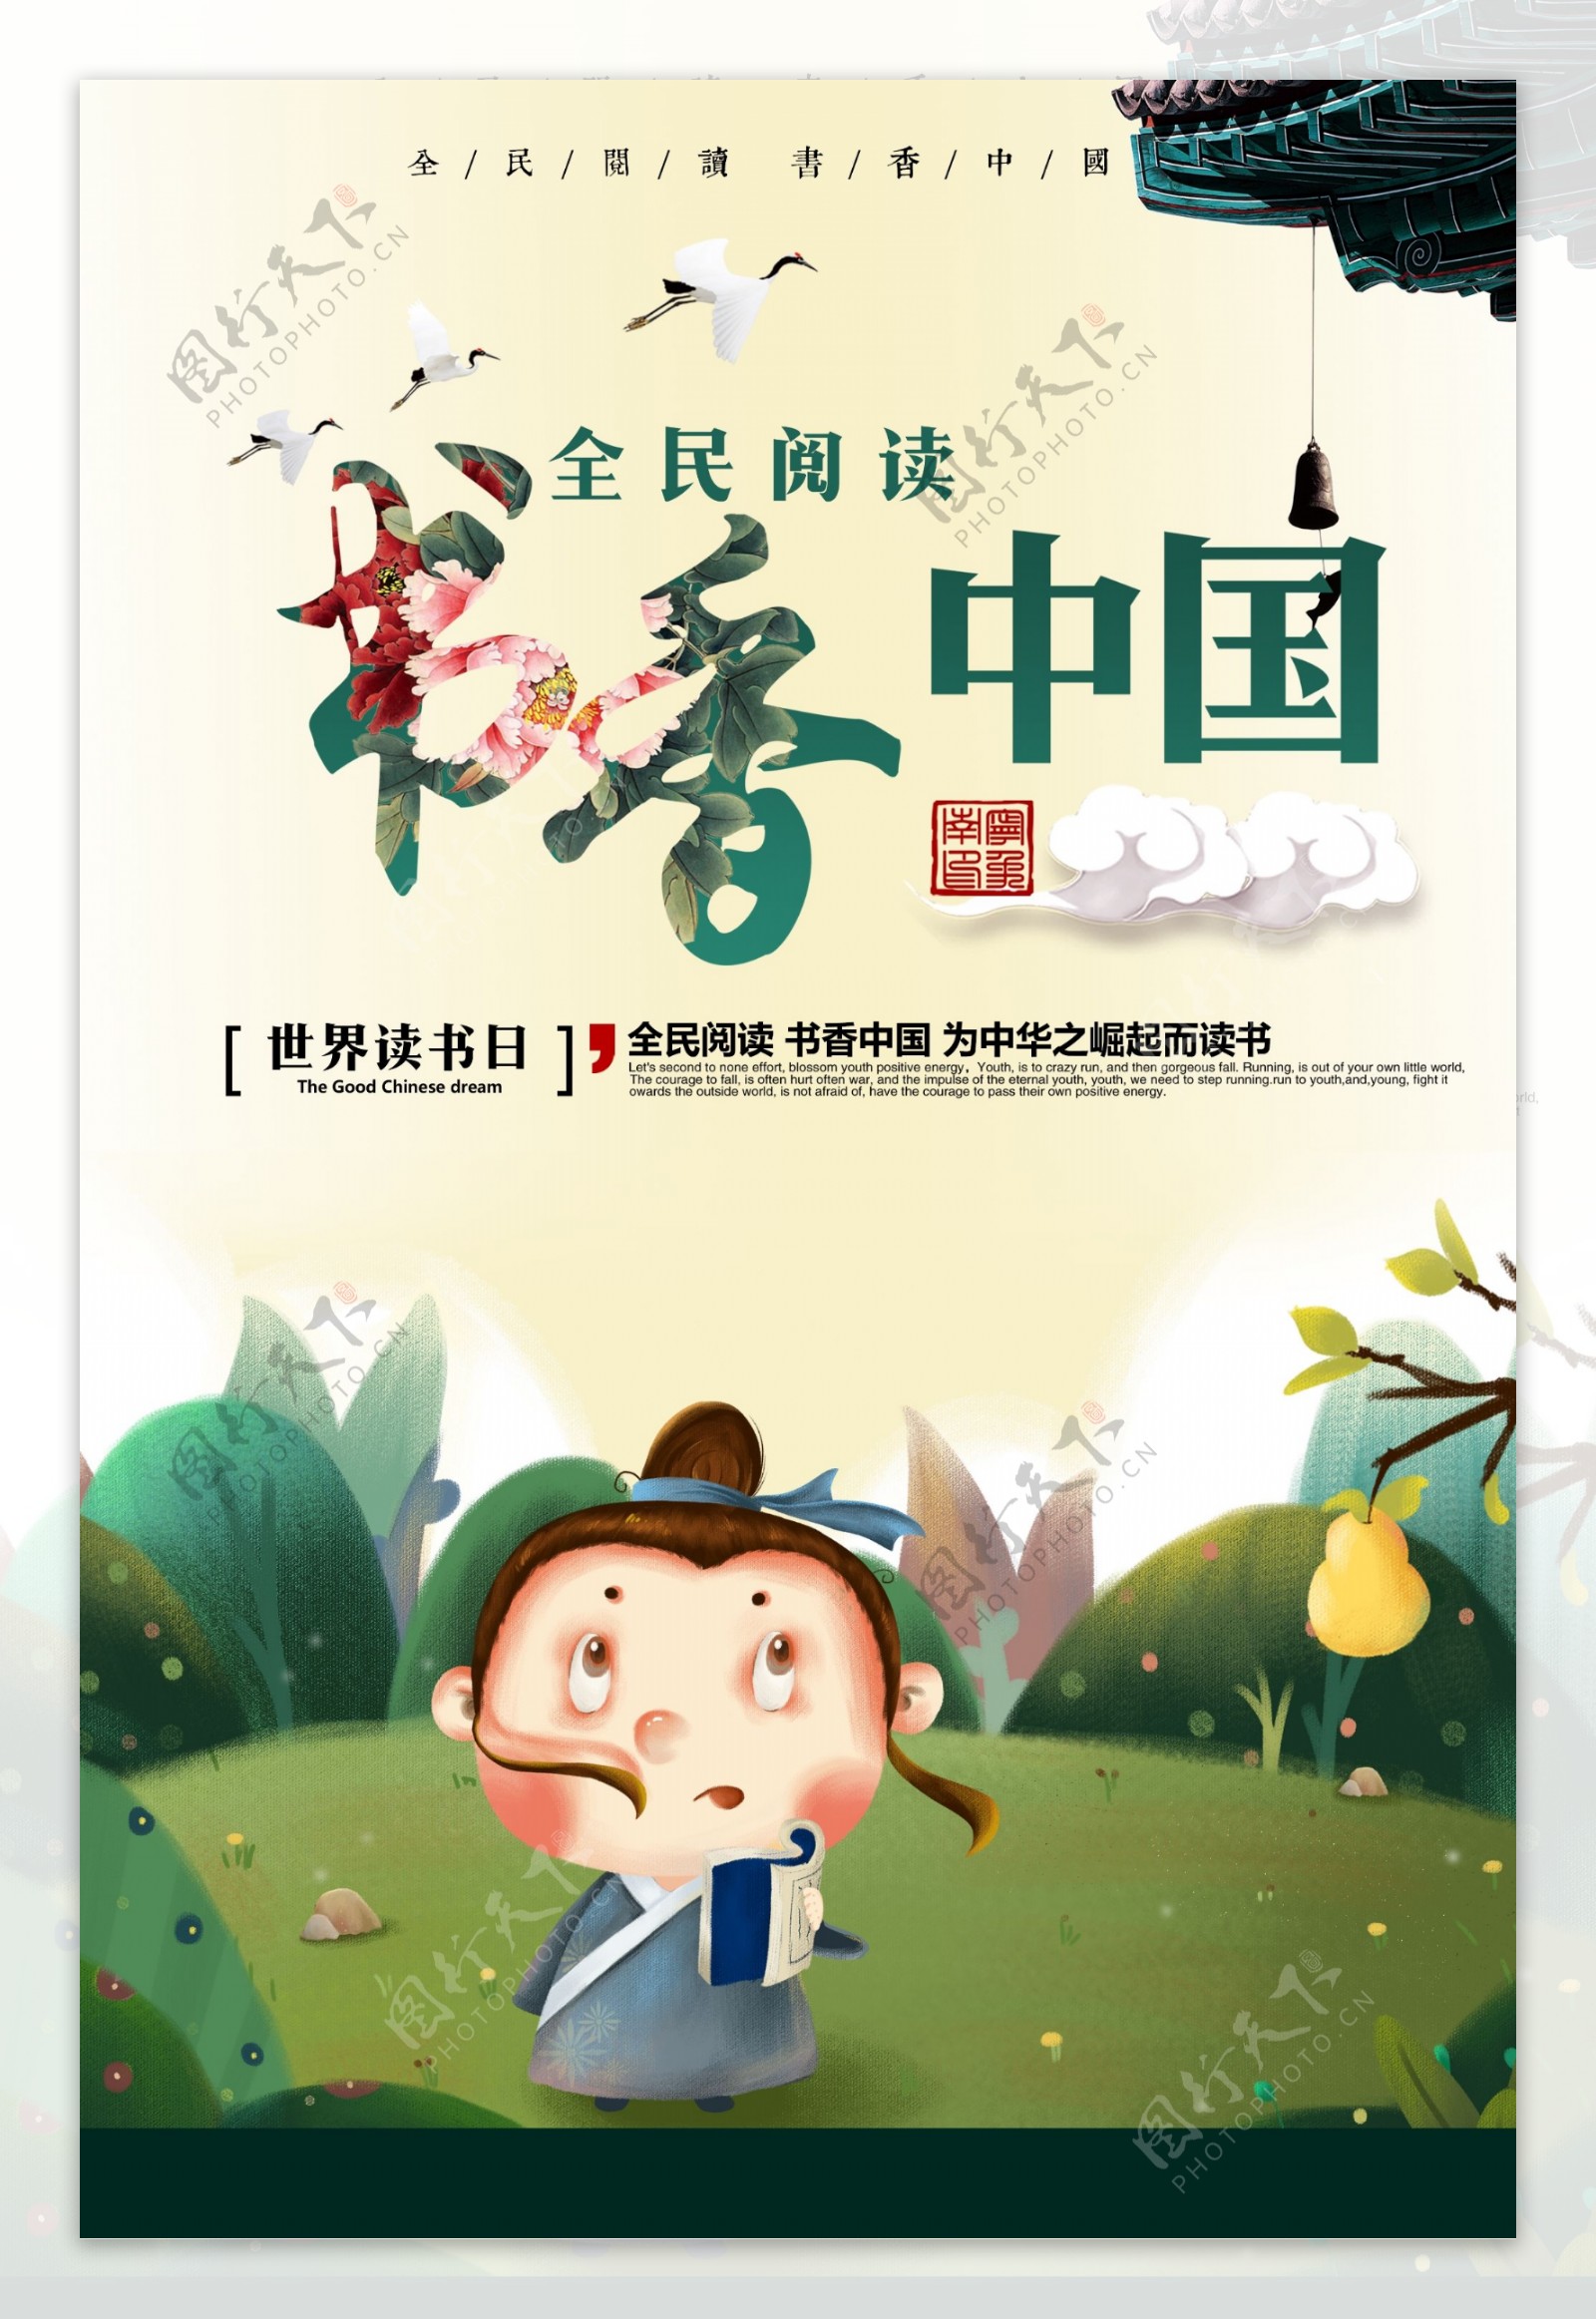 书香文化教育海报